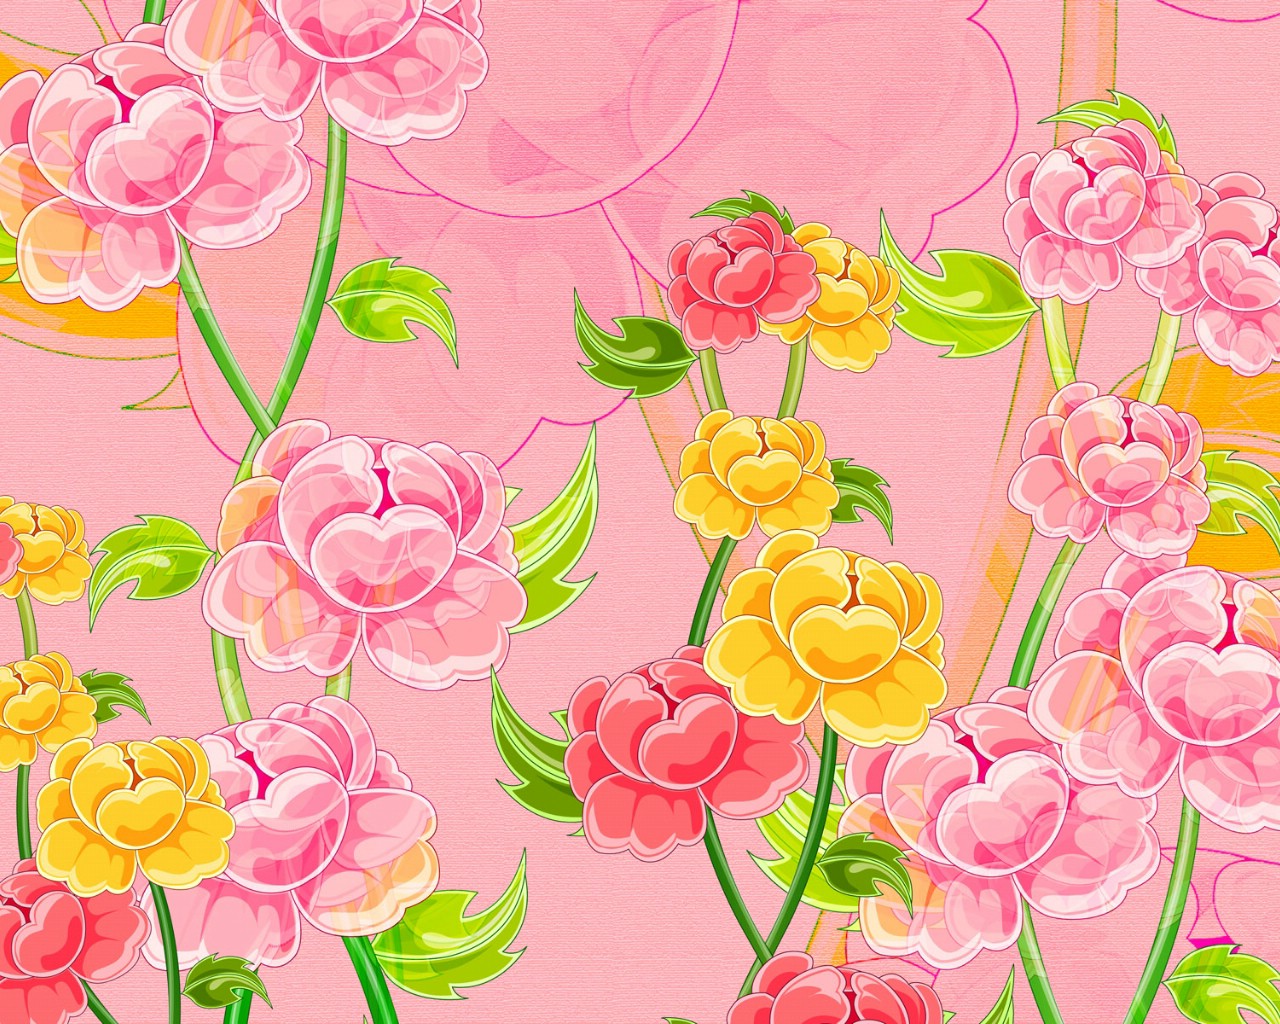 壁纸1280x1024合成花卉 4 16壁纸 合成花卉壁纸 合成花卉图片 合成花卉素材 花卉壁纸 花卉图库 花卉图片素材桌面壁纸